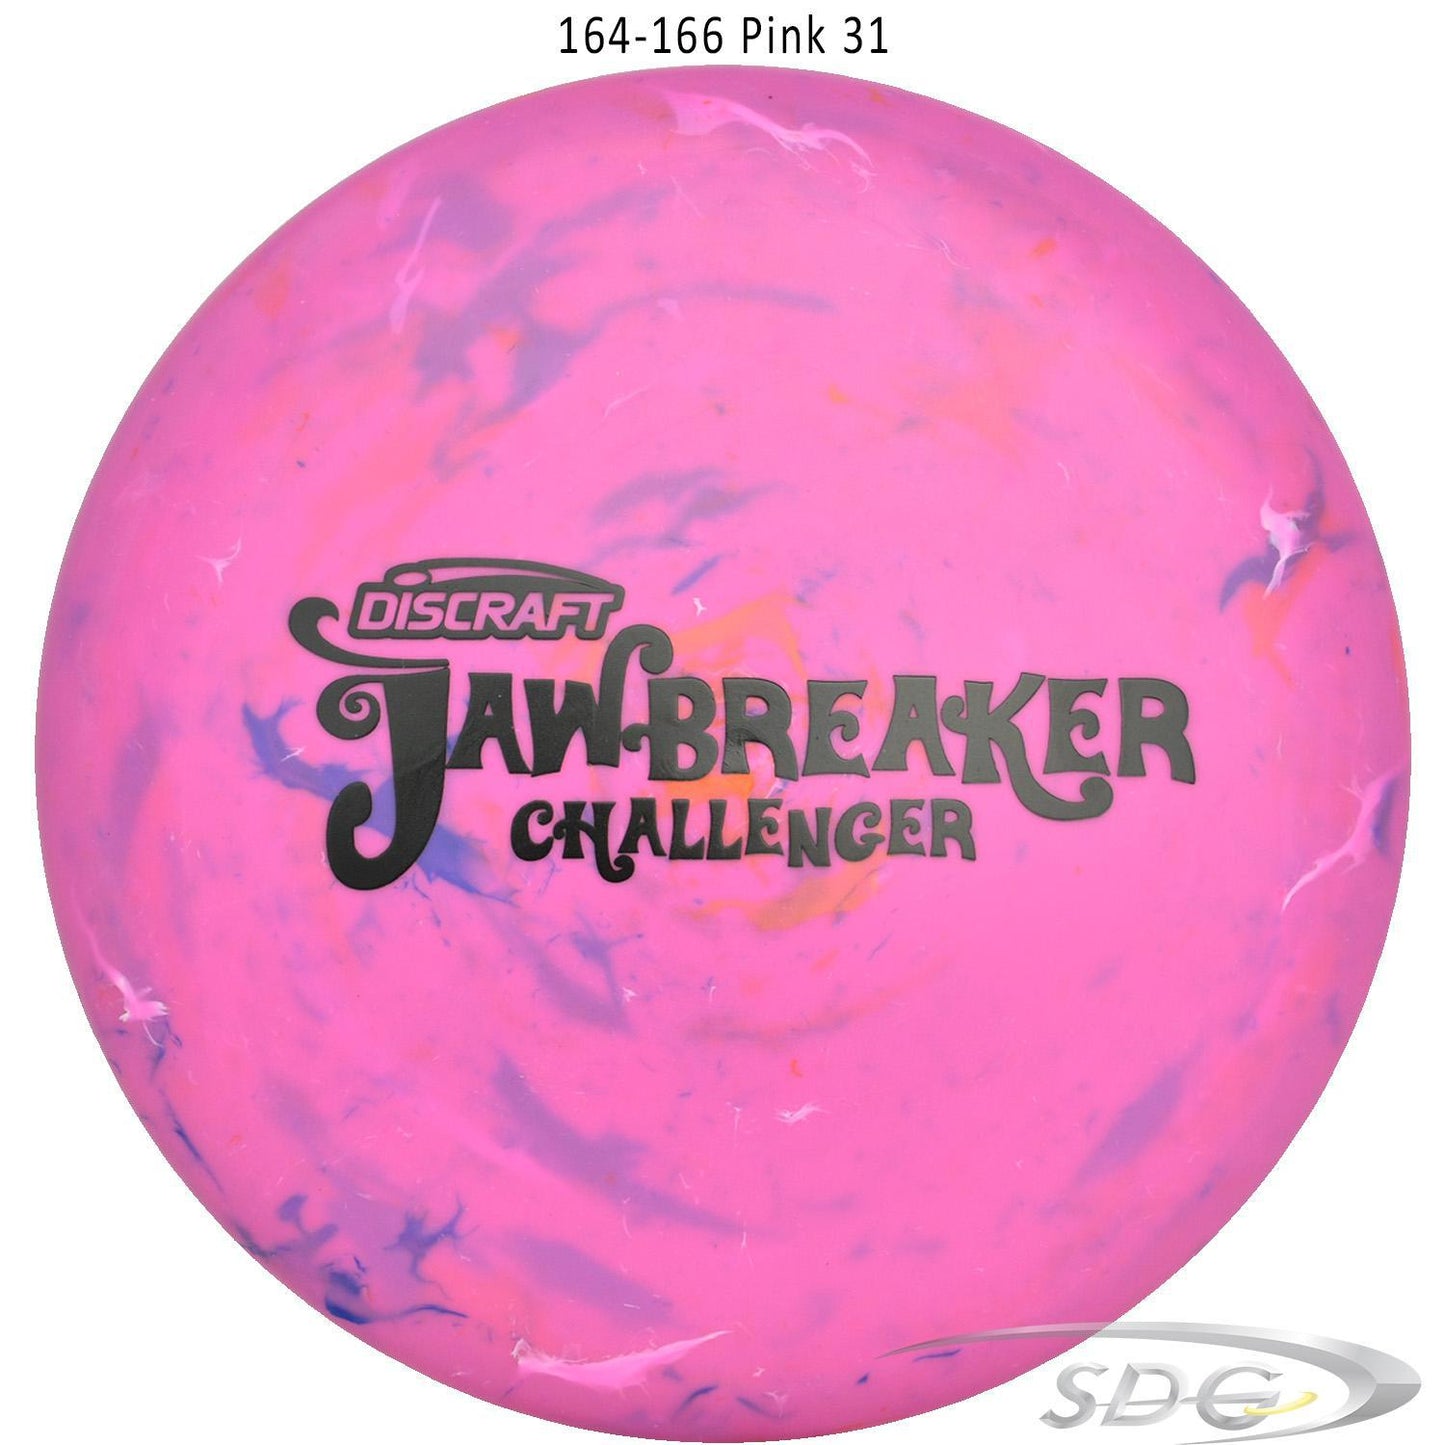 discraft-jawbreaker-challenger-disc-golf-putter 164-166 Pink 31